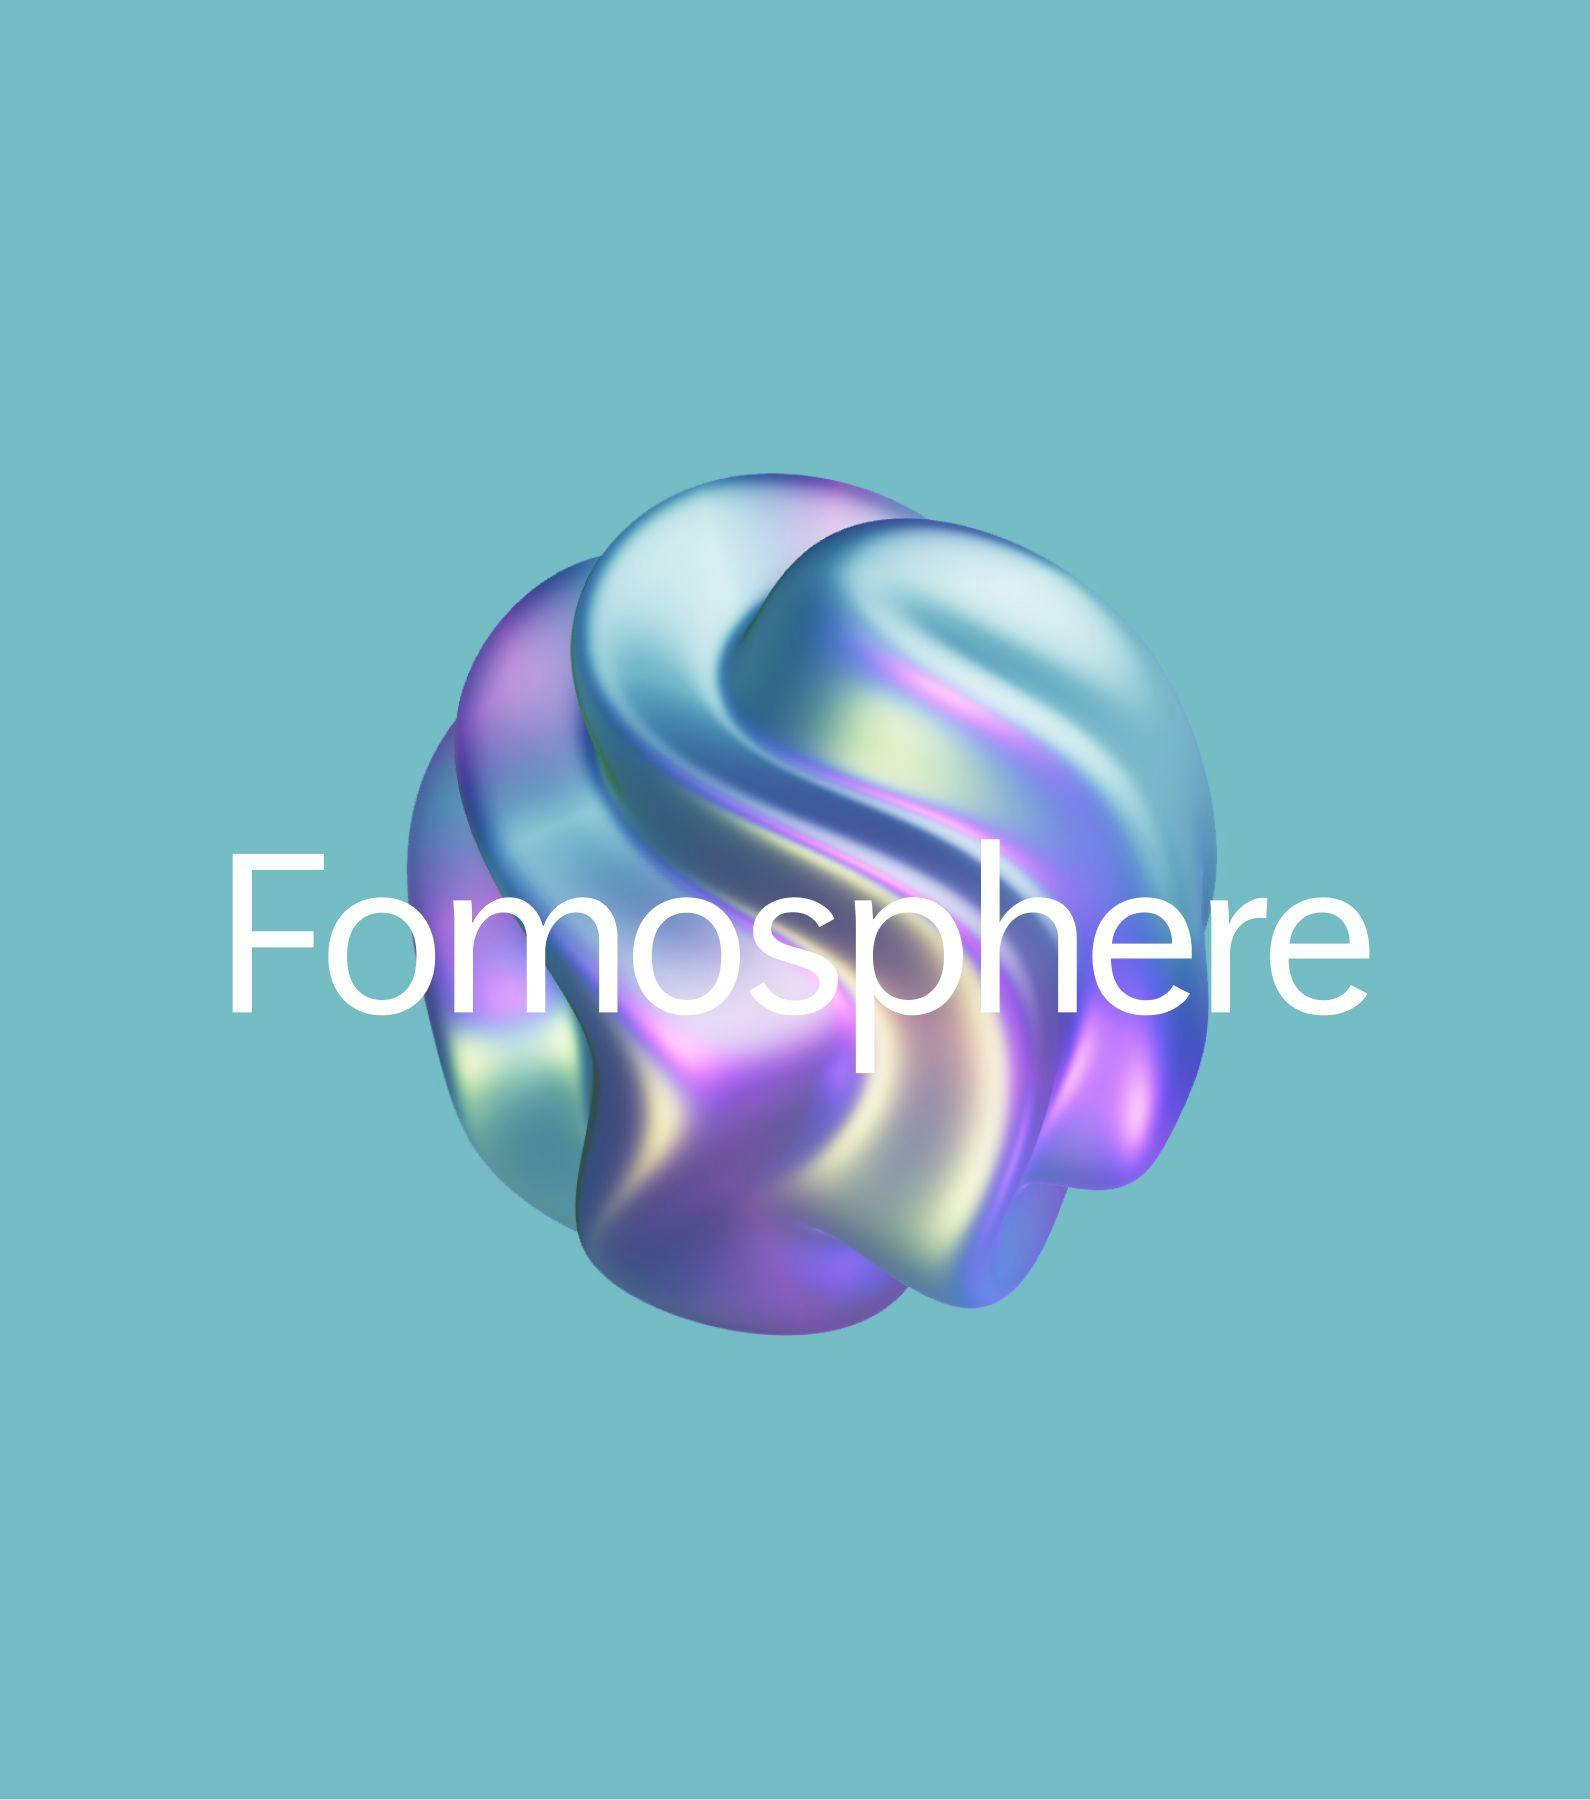 Fomosphere blob